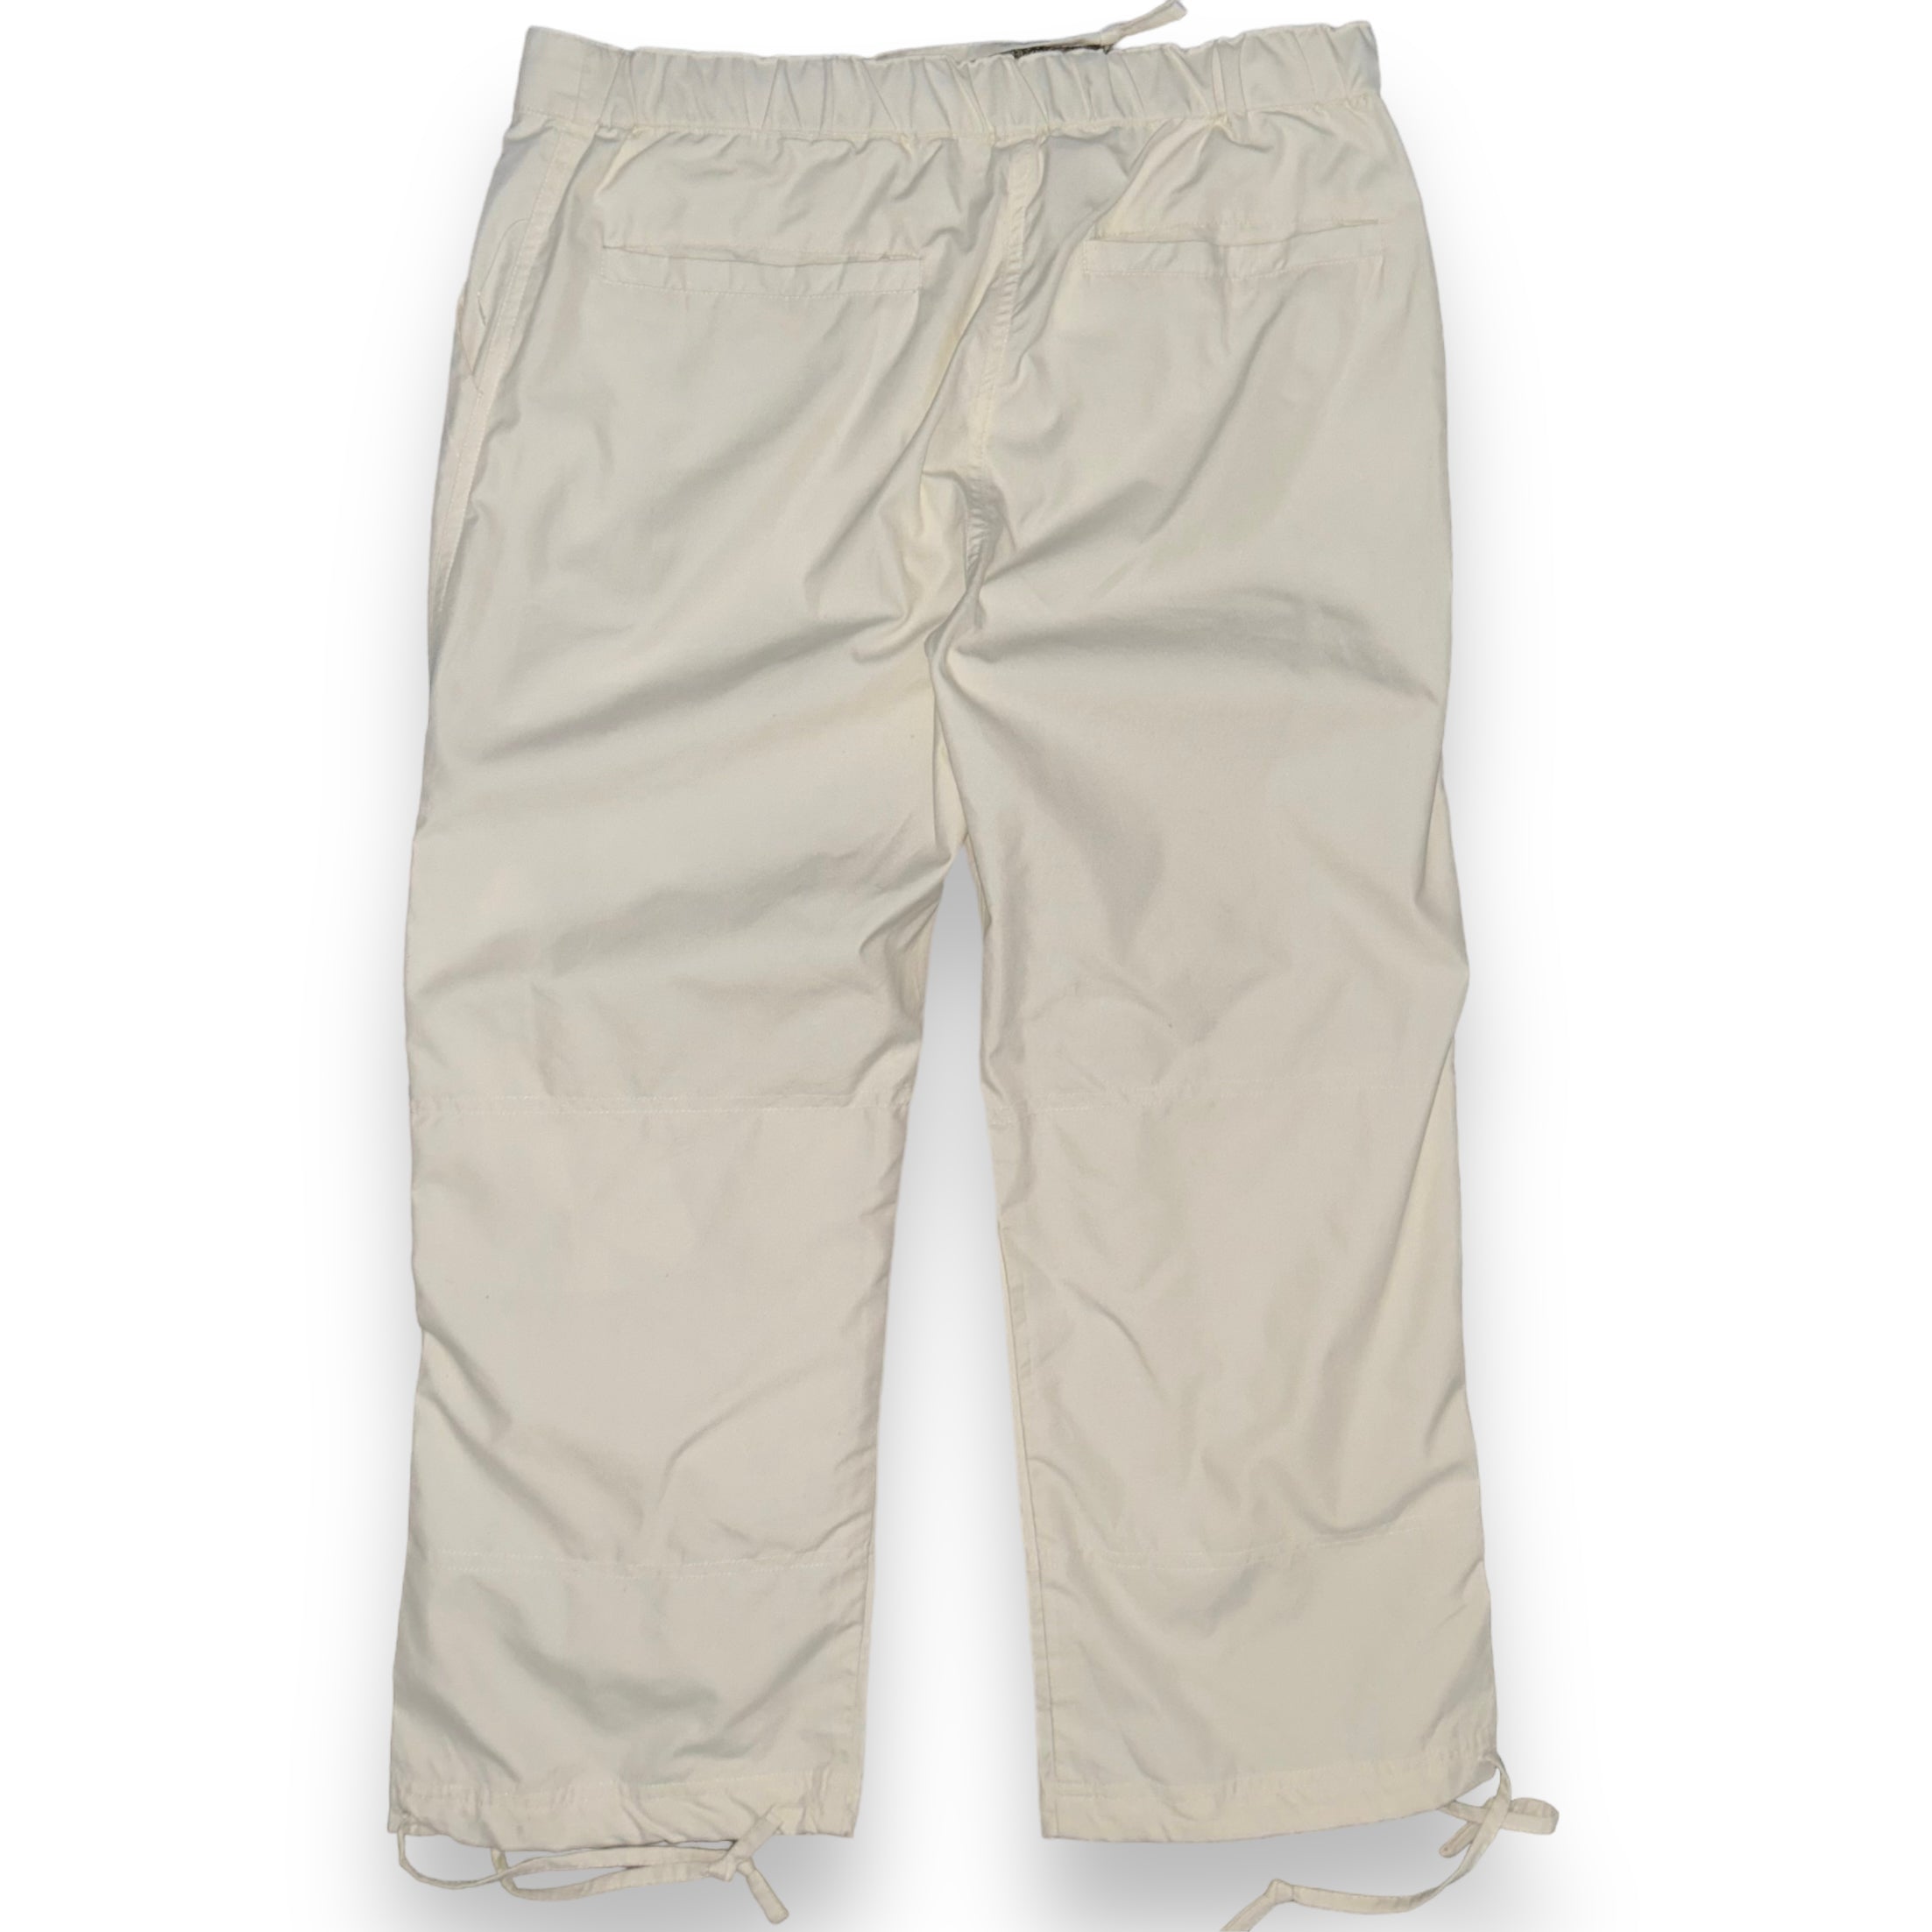 Pantaloni corti US40  (S/M)